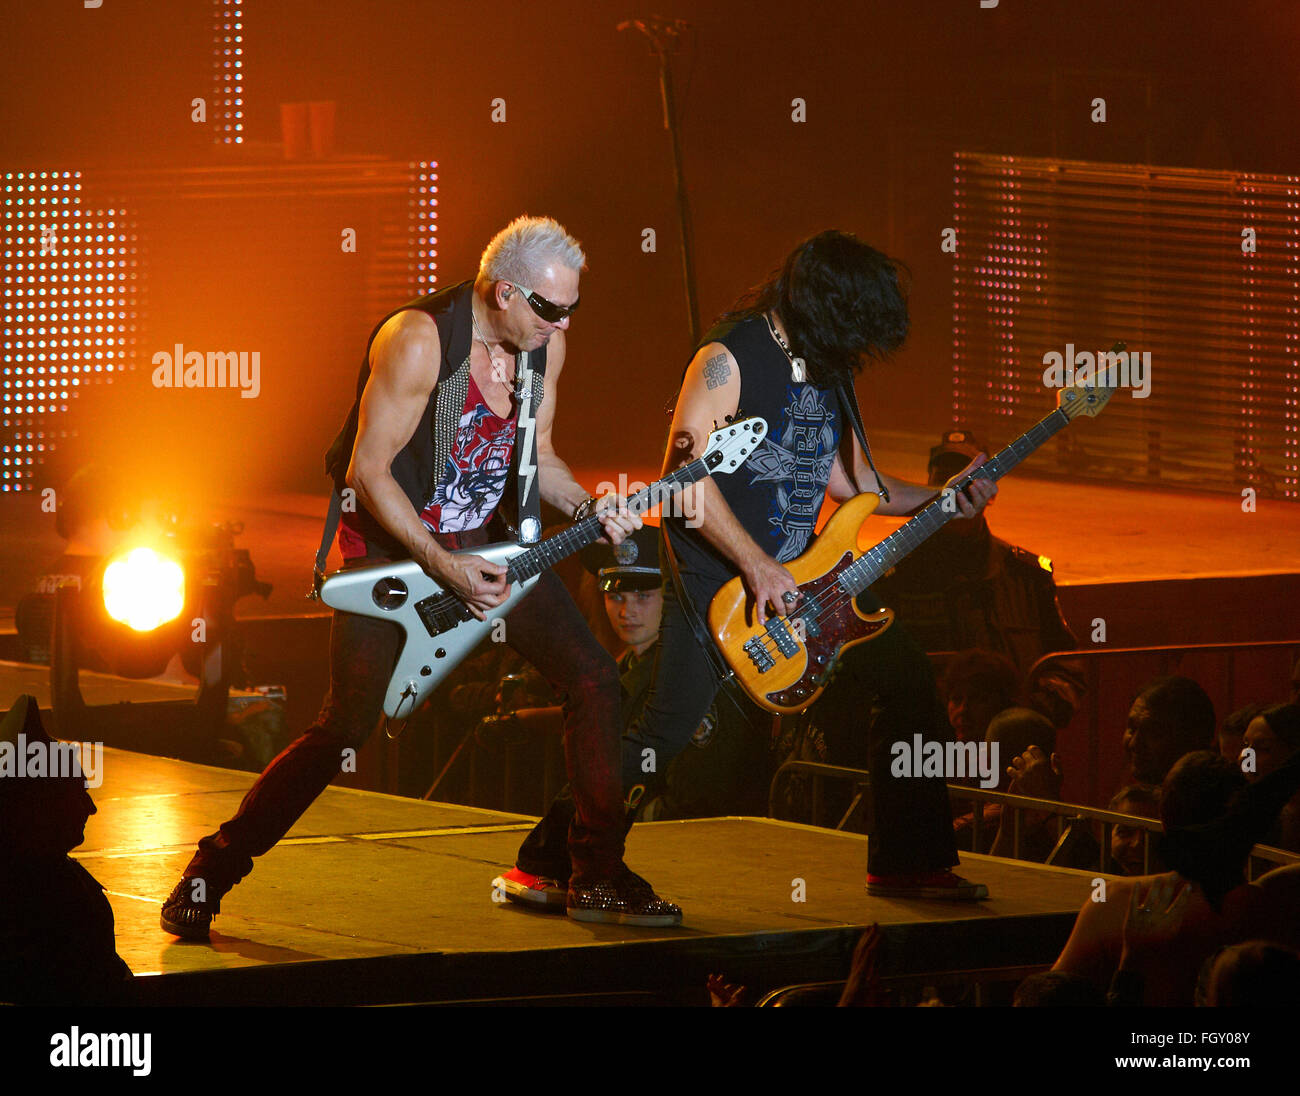 DNIPROPETROVSK, Ucraina - 31 ottobre 2012: chitarristi della band Scorpions esibirsi dal vivo sul palco durante "ting Tour 2012" Foto Stock